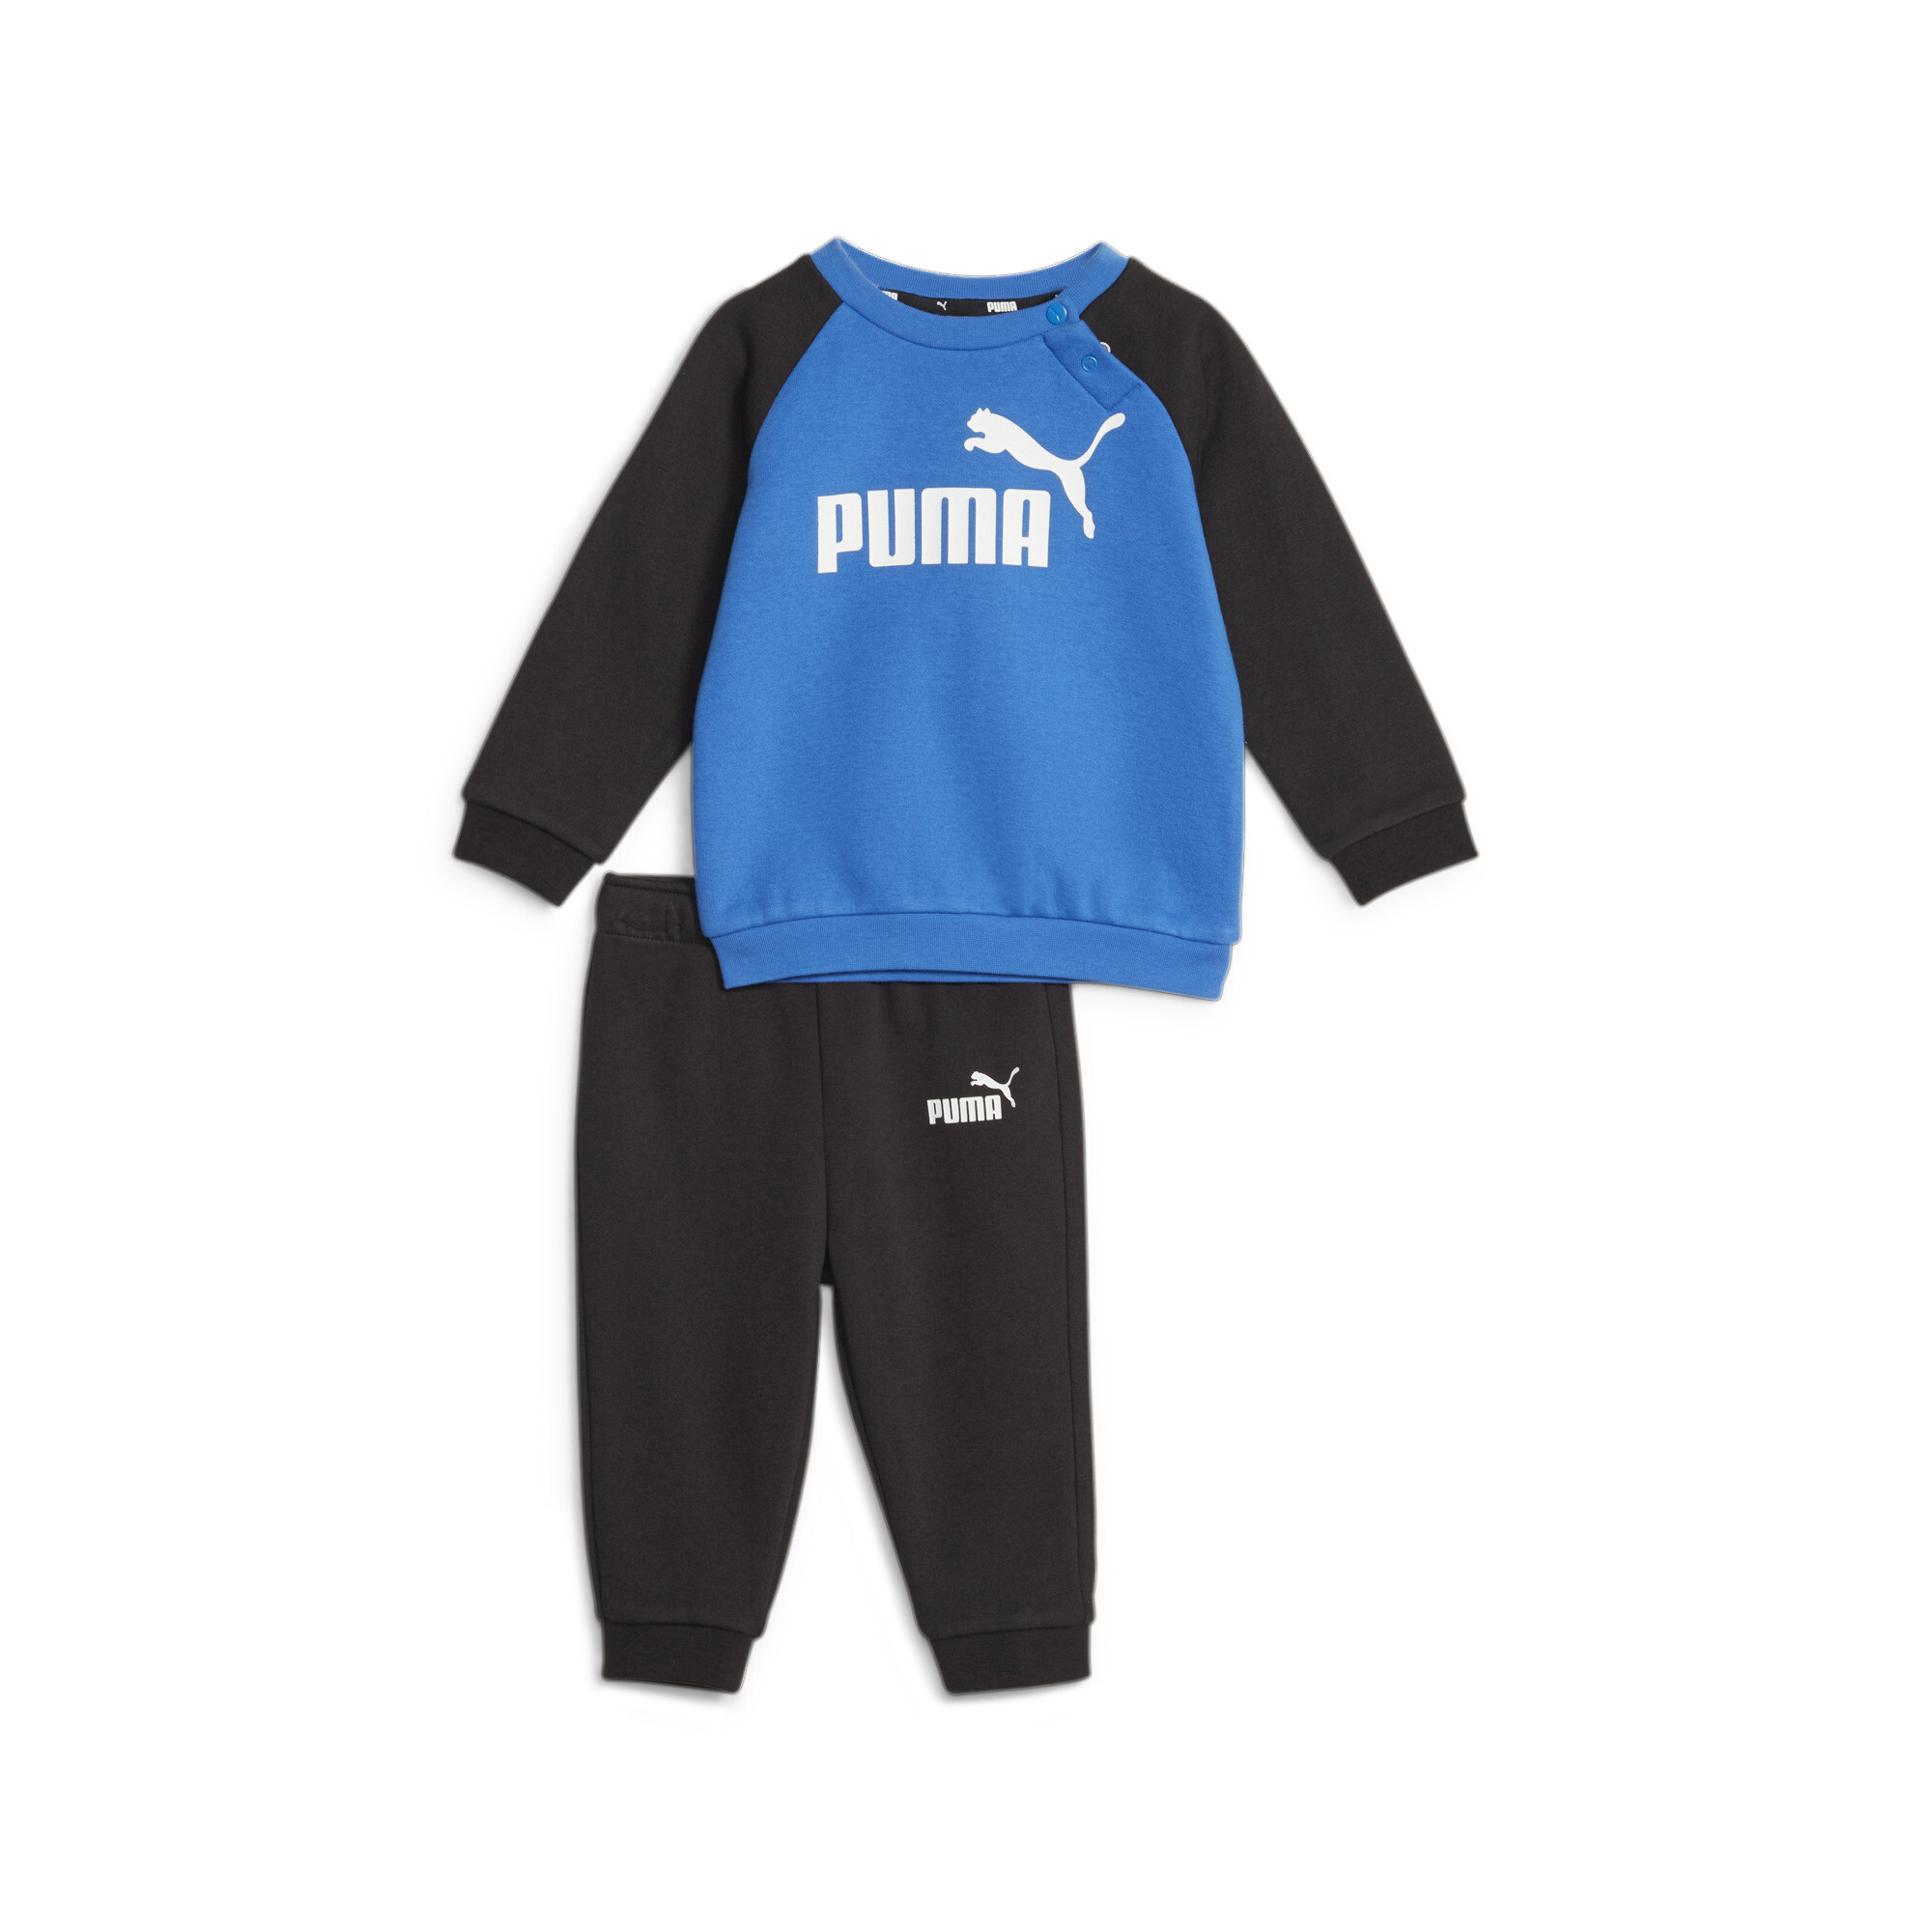 Puma Minicats Essentials Raglan Babies' Jogger Set, Blue, Size 1-2Y, Clothing